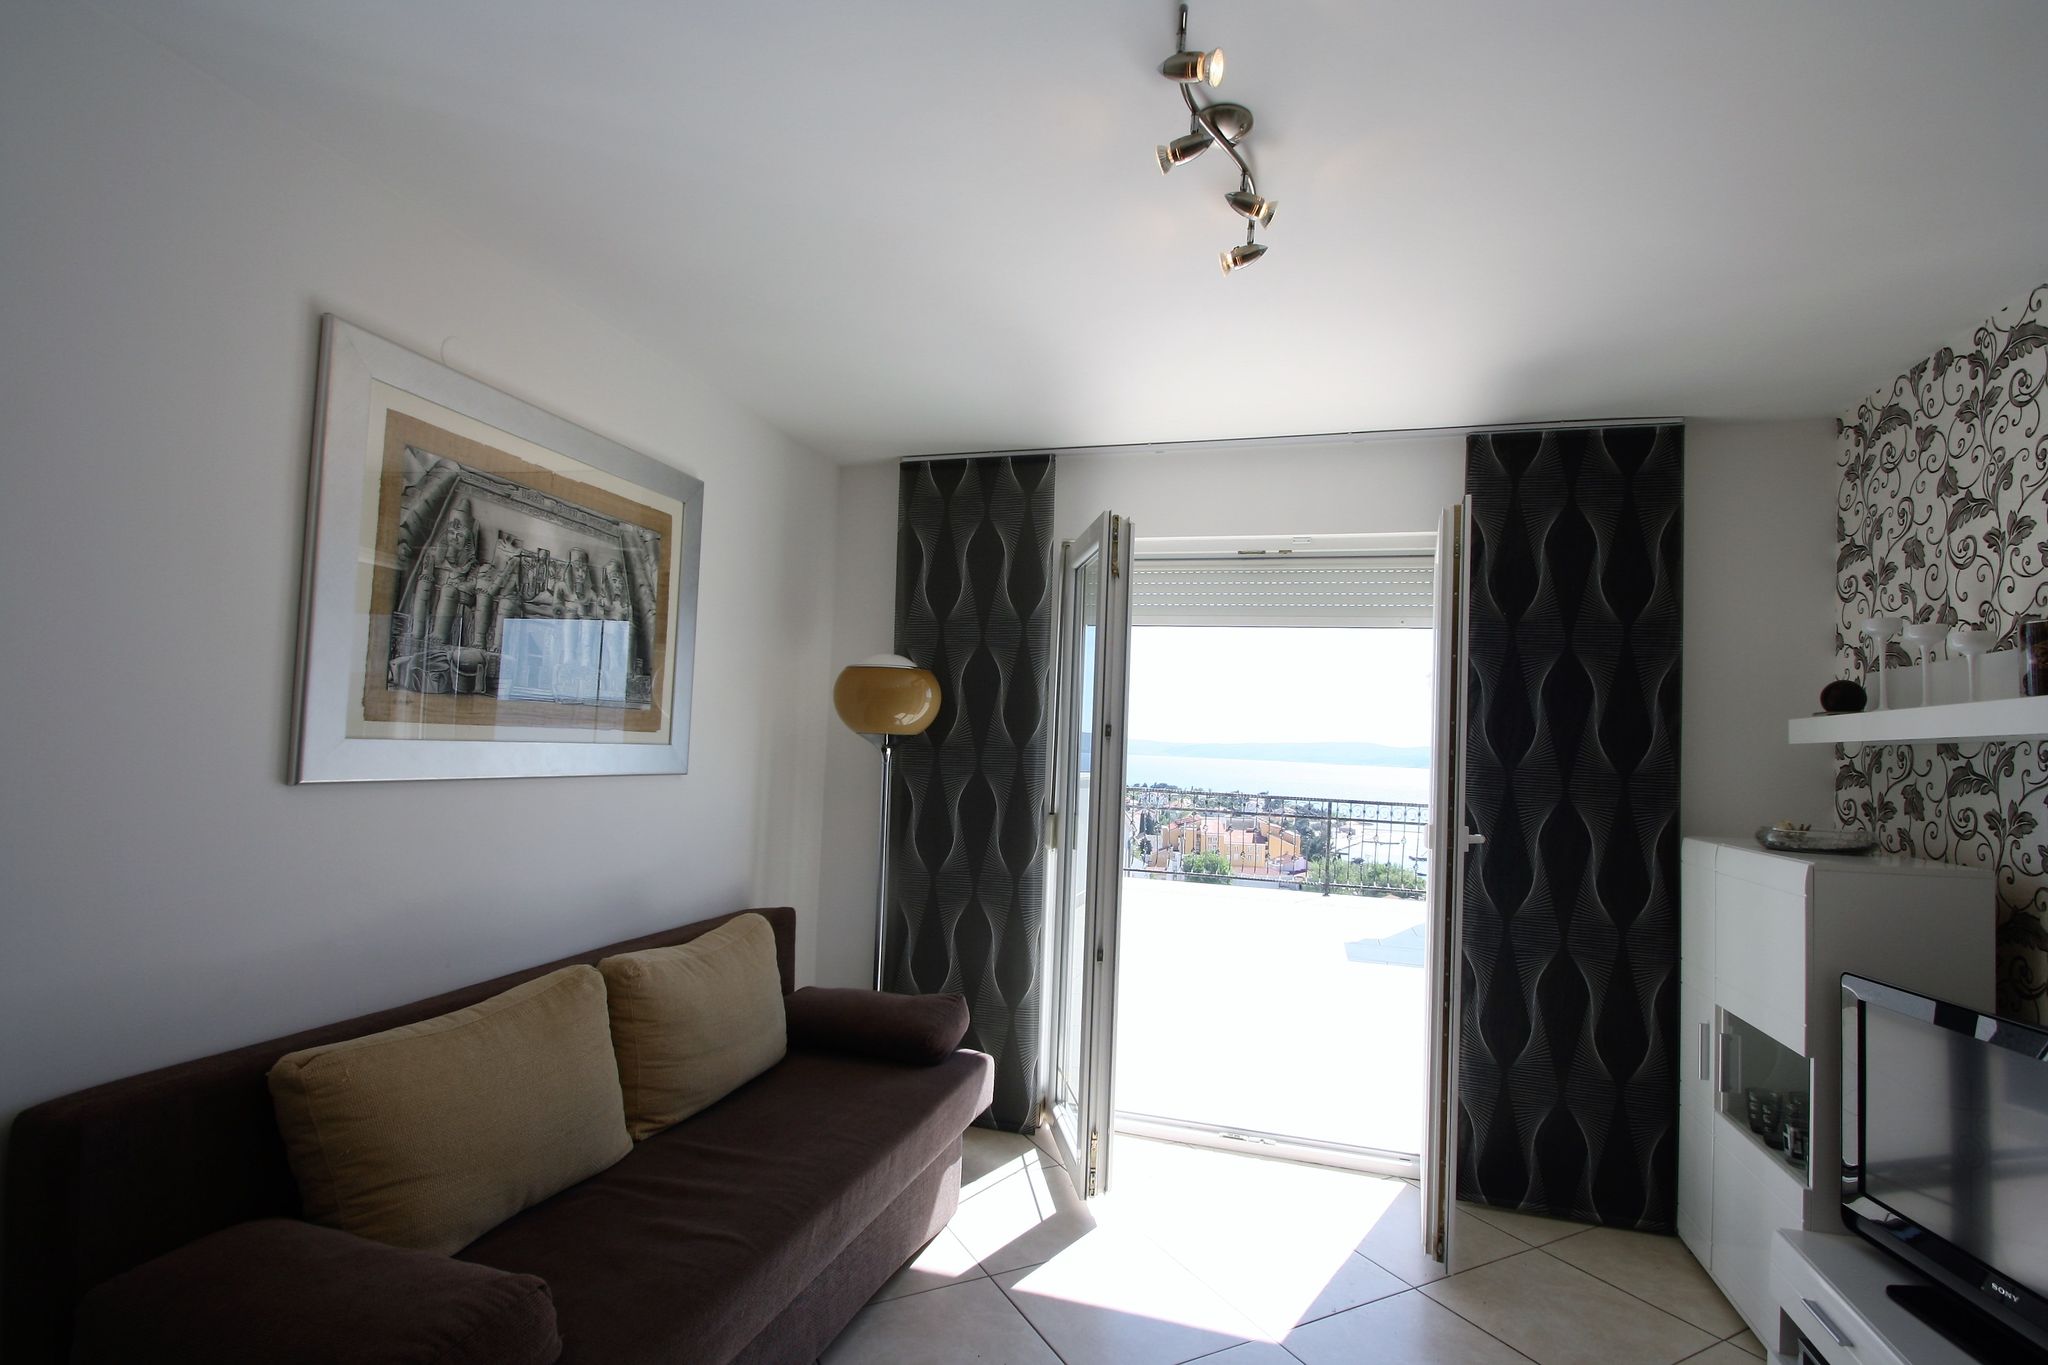 Appartement moderne avec vue magnifique sur la mer à Selce